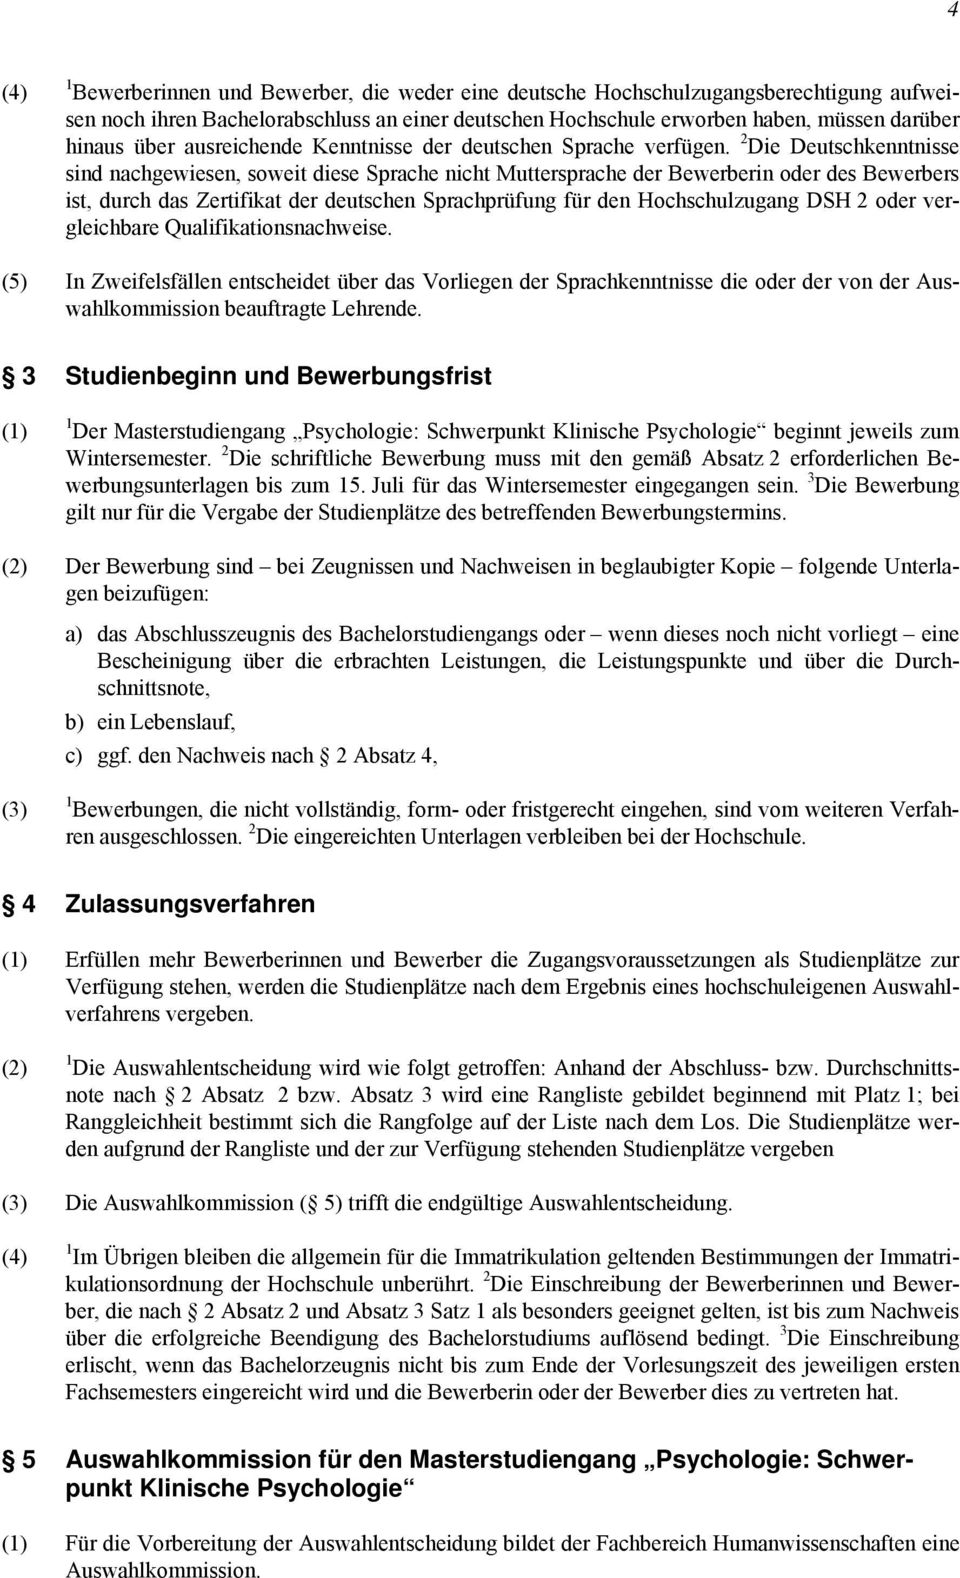 2 Die Deutschkenntnisse sind nachgewiesen, soweit diese Sprache nicht Muttersprache der Bewerberin oder des Bewerbers ist, durch das Zertifikat der deutschen Sprachprüfung für den Hochschulzugang DSH